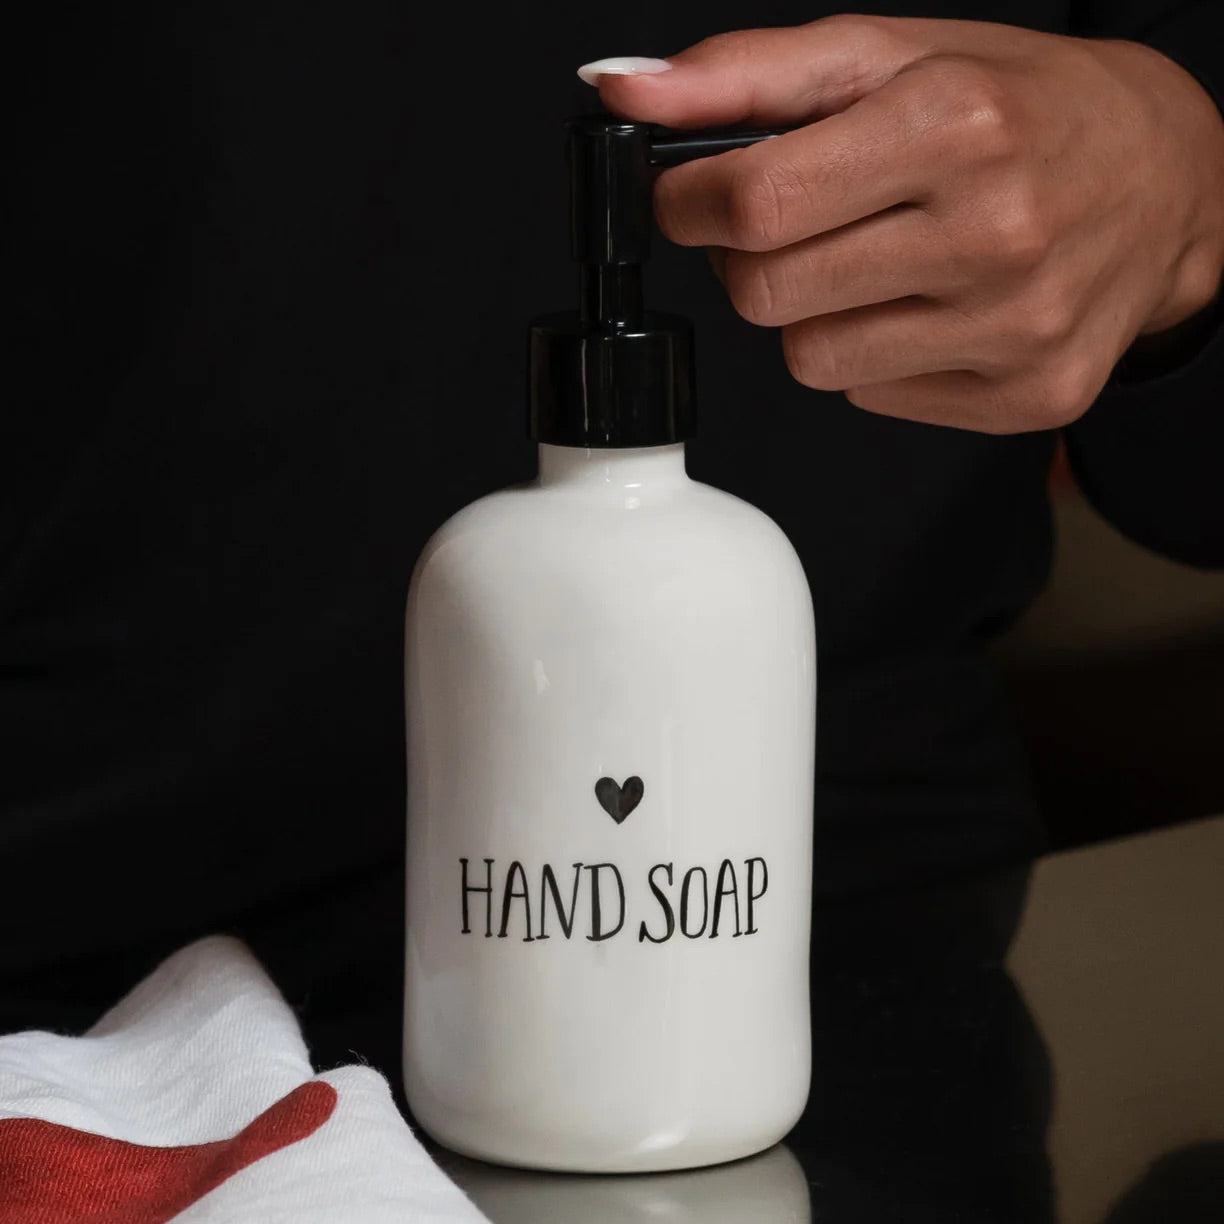 Hand Soap soap dispenser